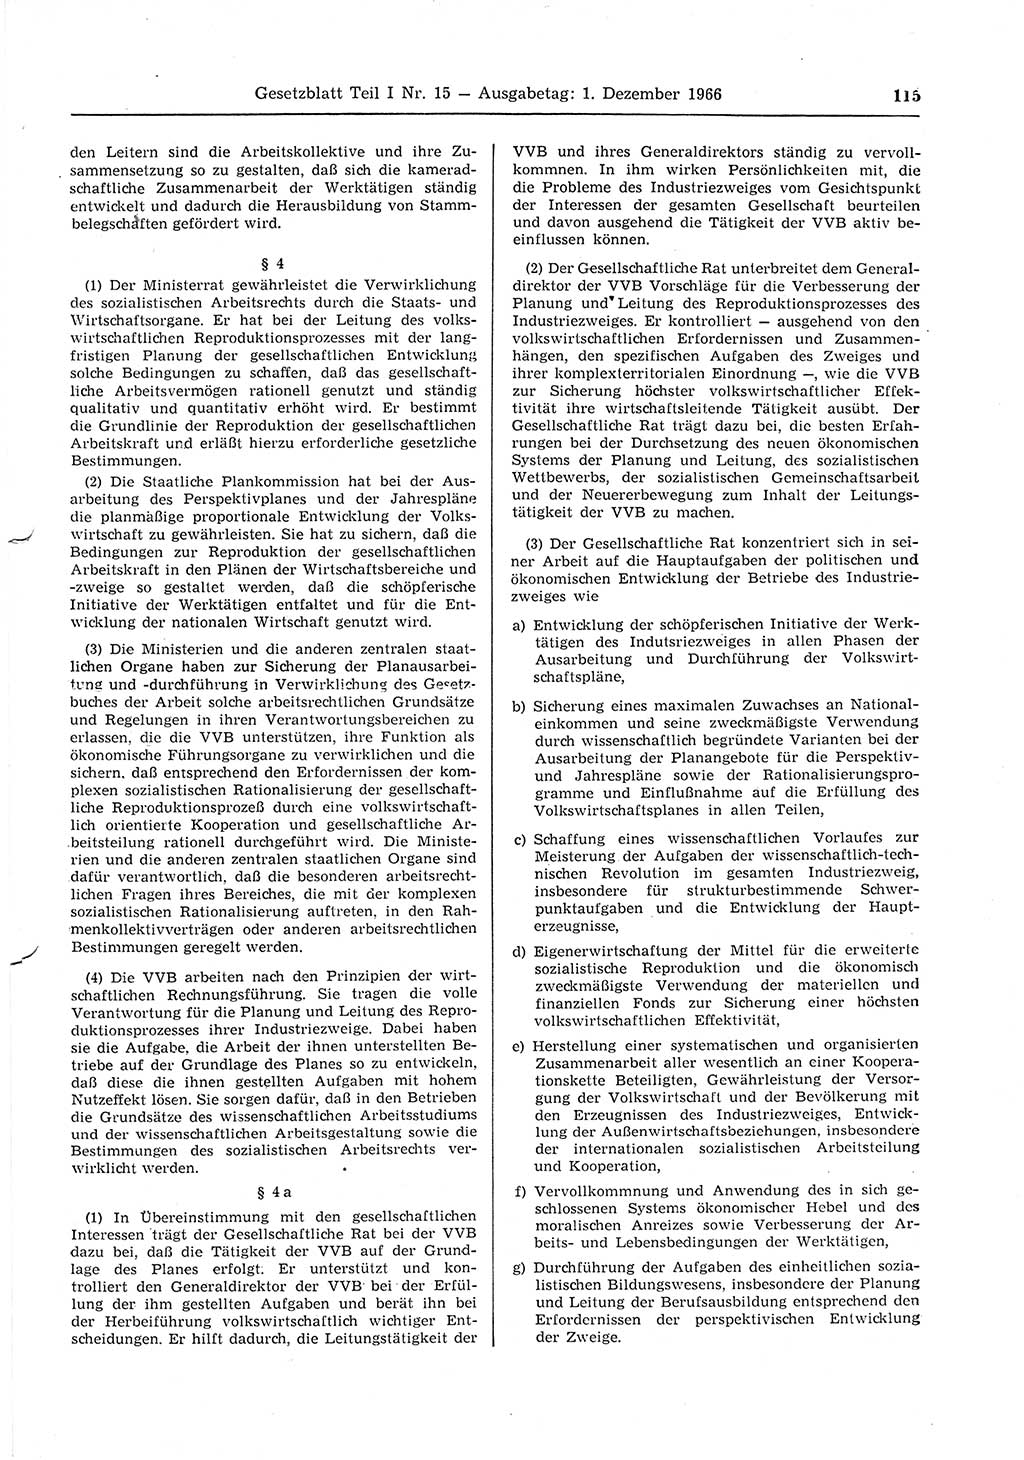 Gesetzblatt (GBl.) der Deutschen Demokratischen Republik (DDR) Teil Ⅰ 1966, Seite 115 (GBl. DDR Ⅰ 1966, S. 115)